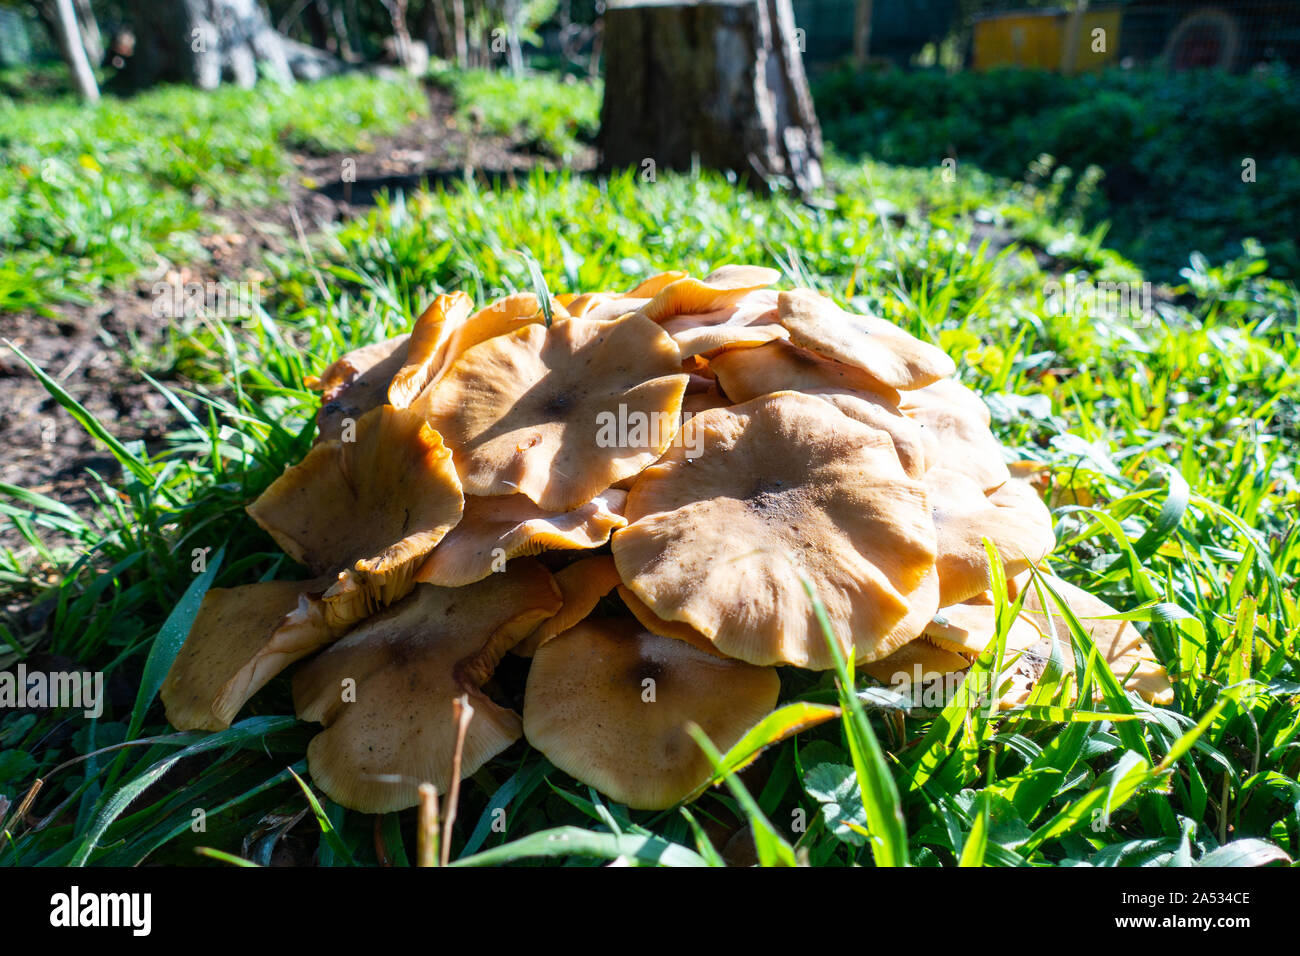 Armillaria mellea, miele fungo è un basidiomicete funghi visto qui su legno marcescente in UK Bosco in autunno Foto Stock